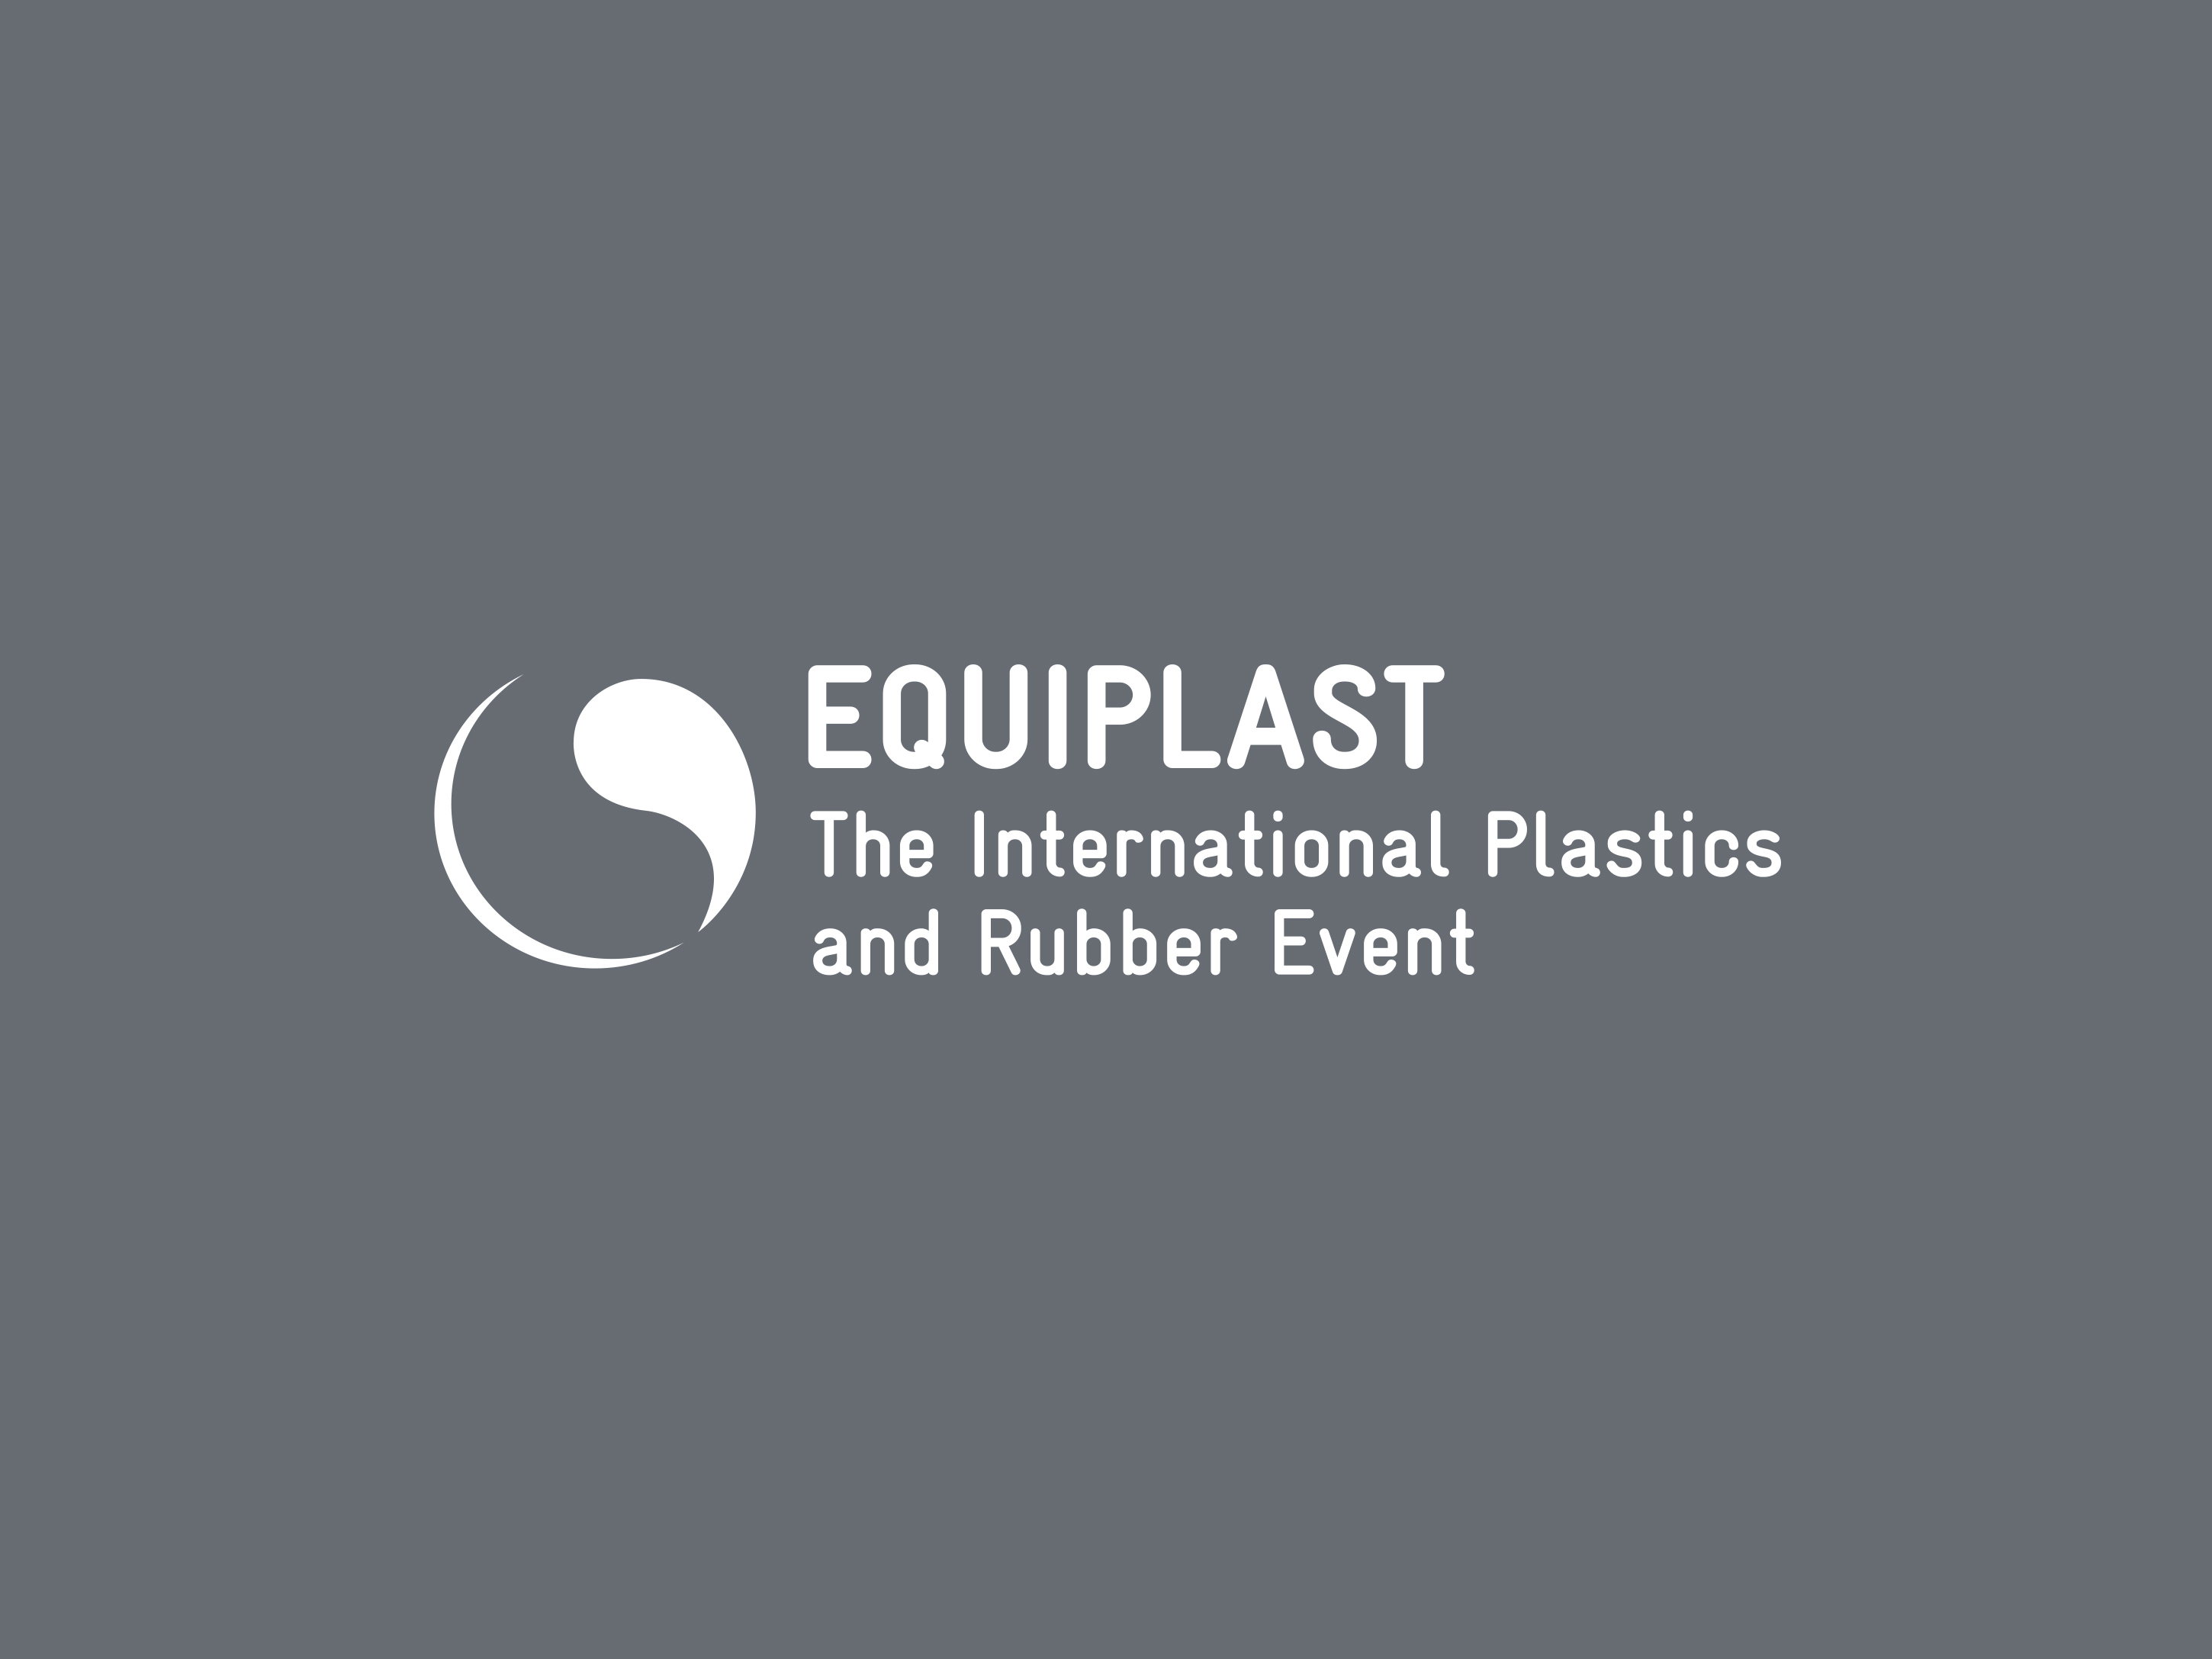 Logo der Equiplast, einer Schlüsselmesse im Bereich der Kunststoffherstellung